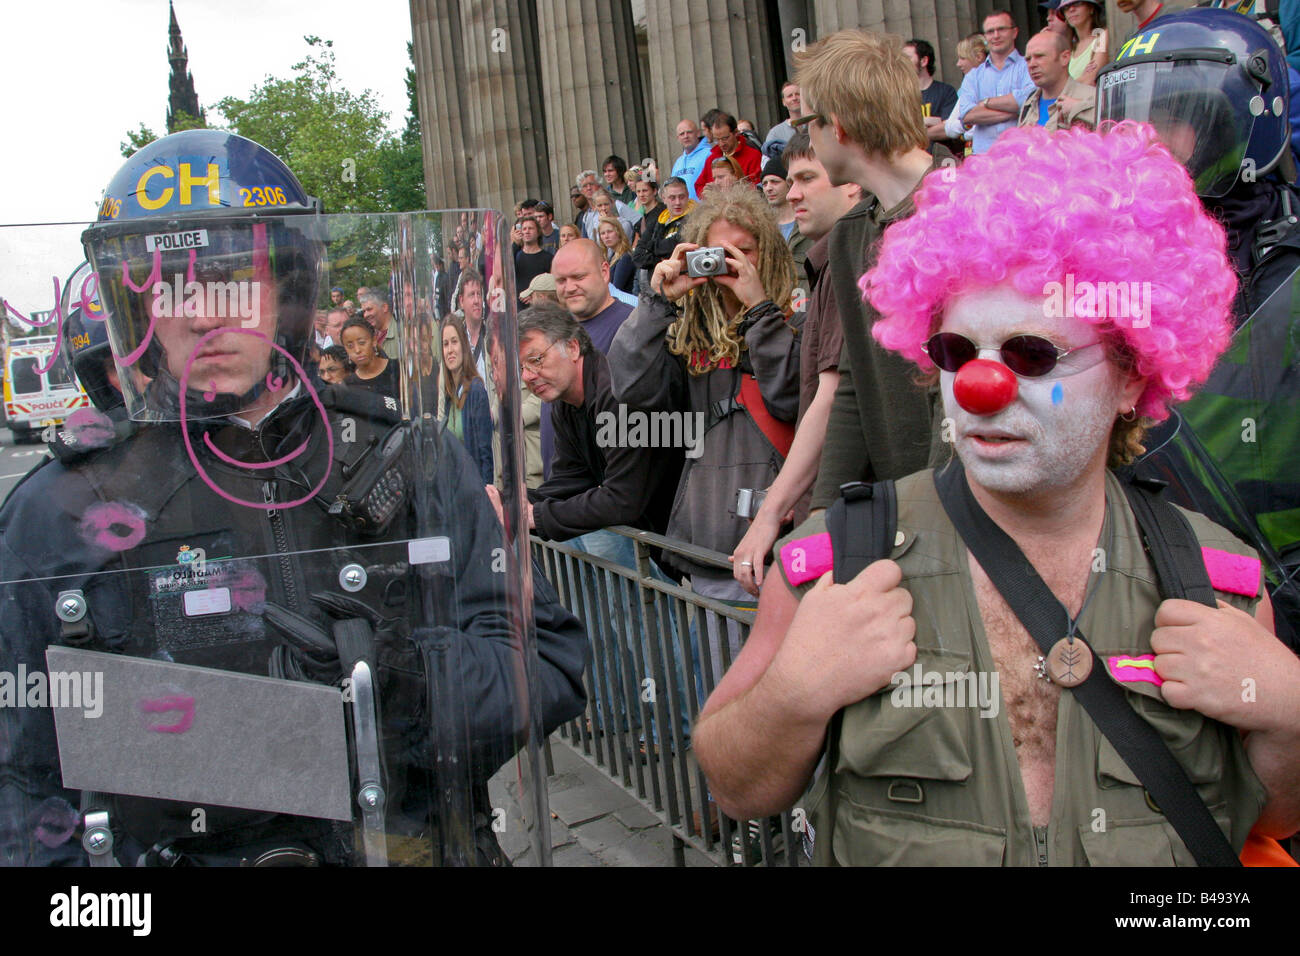 Clown et policamen au cours de l'anti G8 demo, Édimbourg, Écosse, Royaume-Uni Banque D'Images